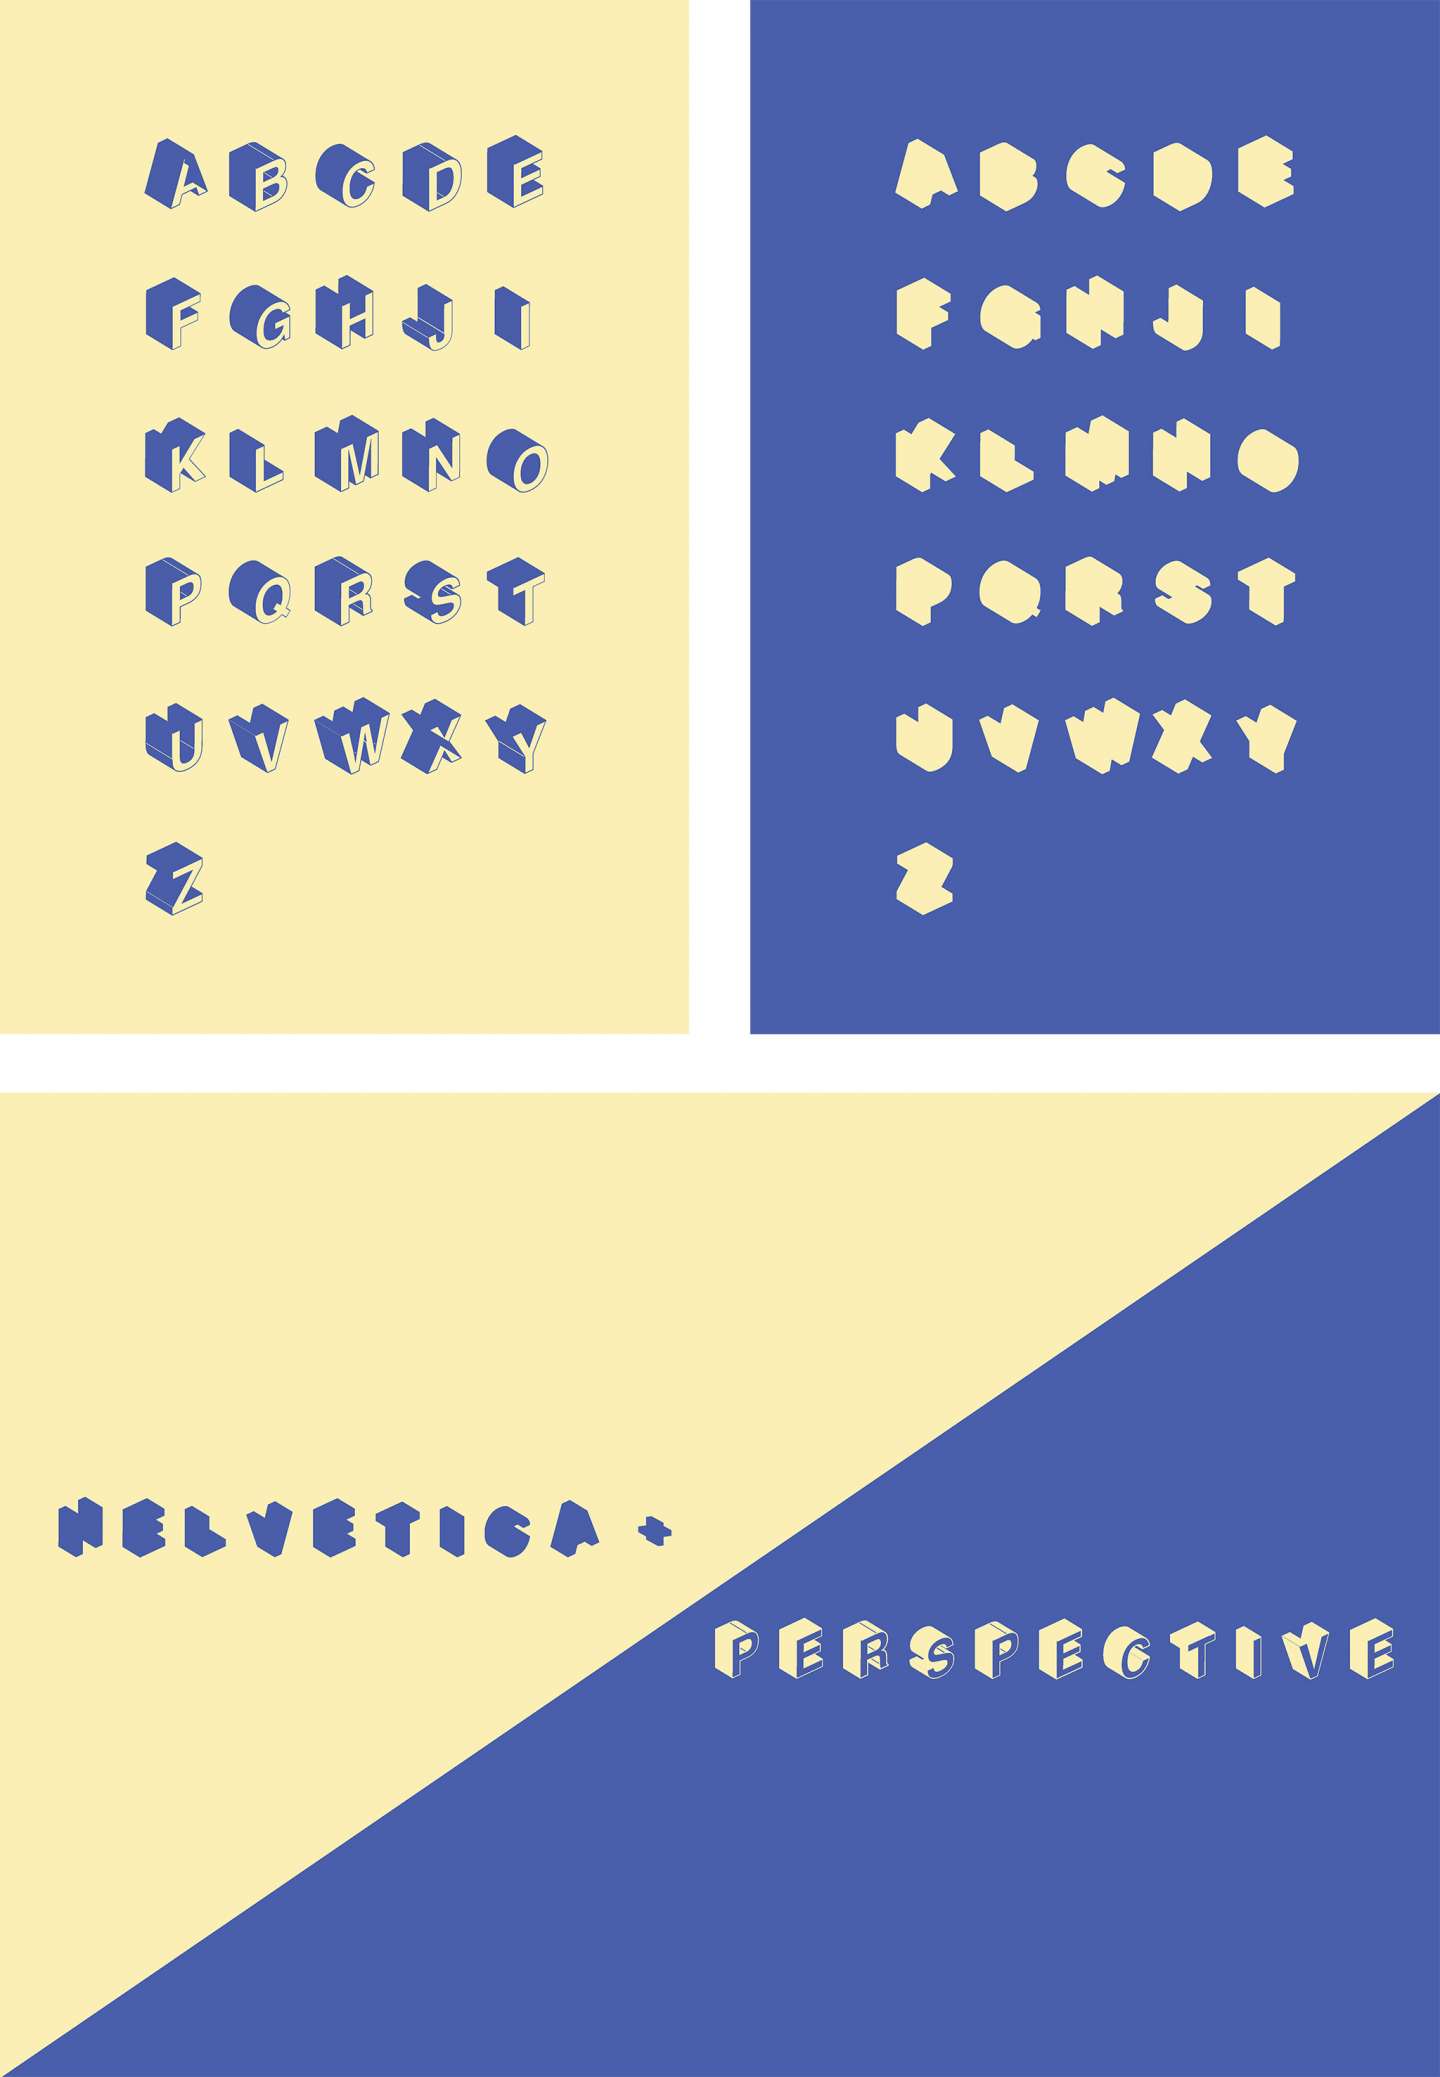 Helvetica + Perspective Typeface Design 